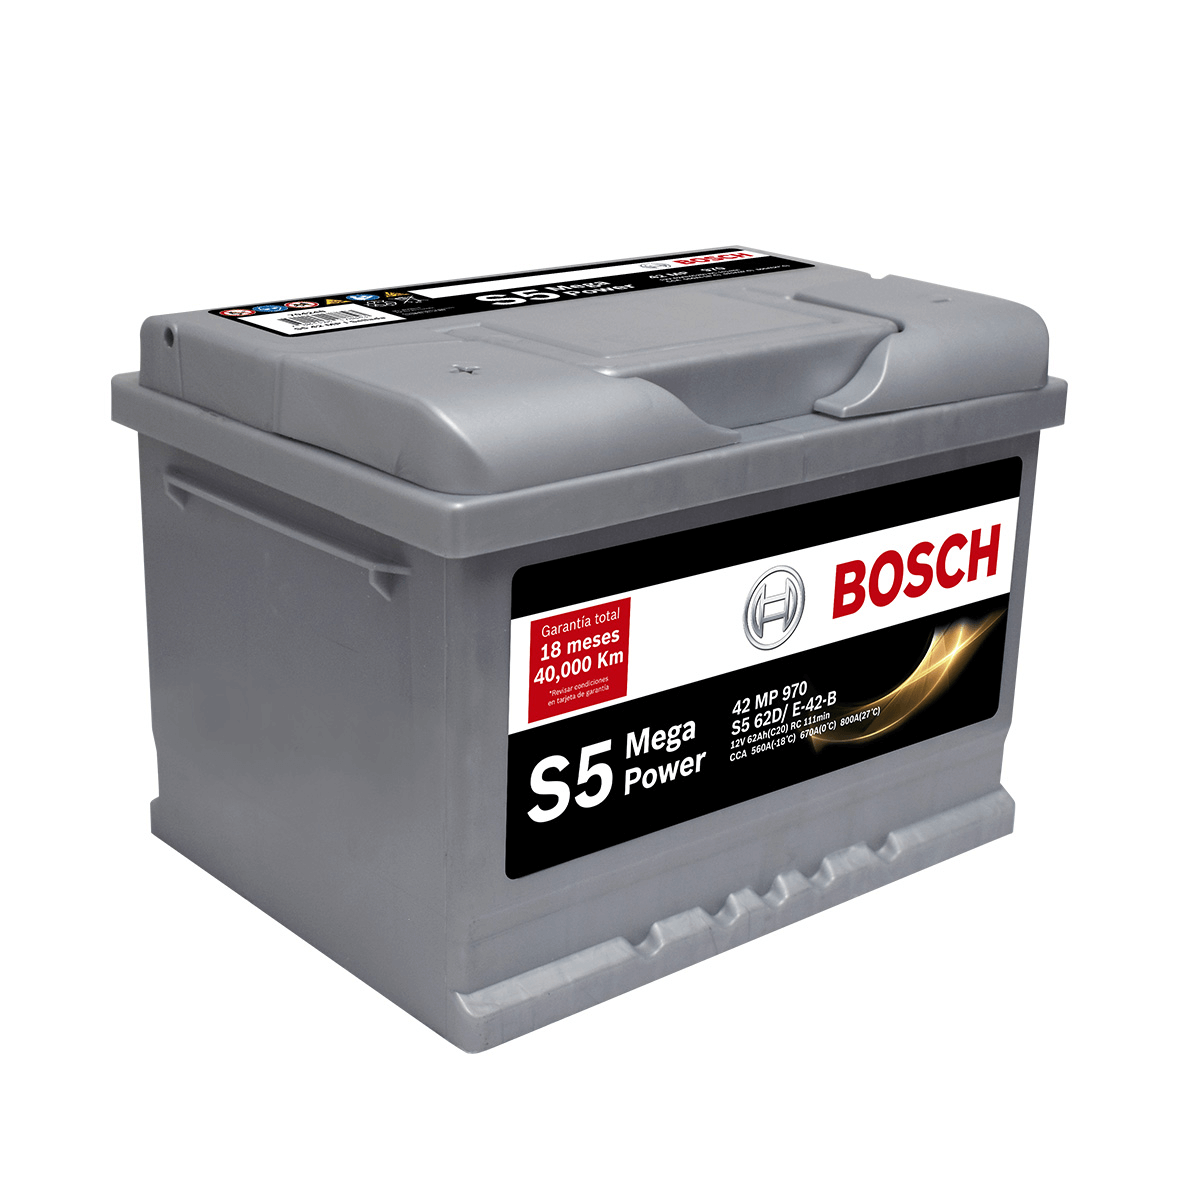 BATERIA BOSCH® S5 - 42 MP (- +) NORMAL 62AH SELLADA